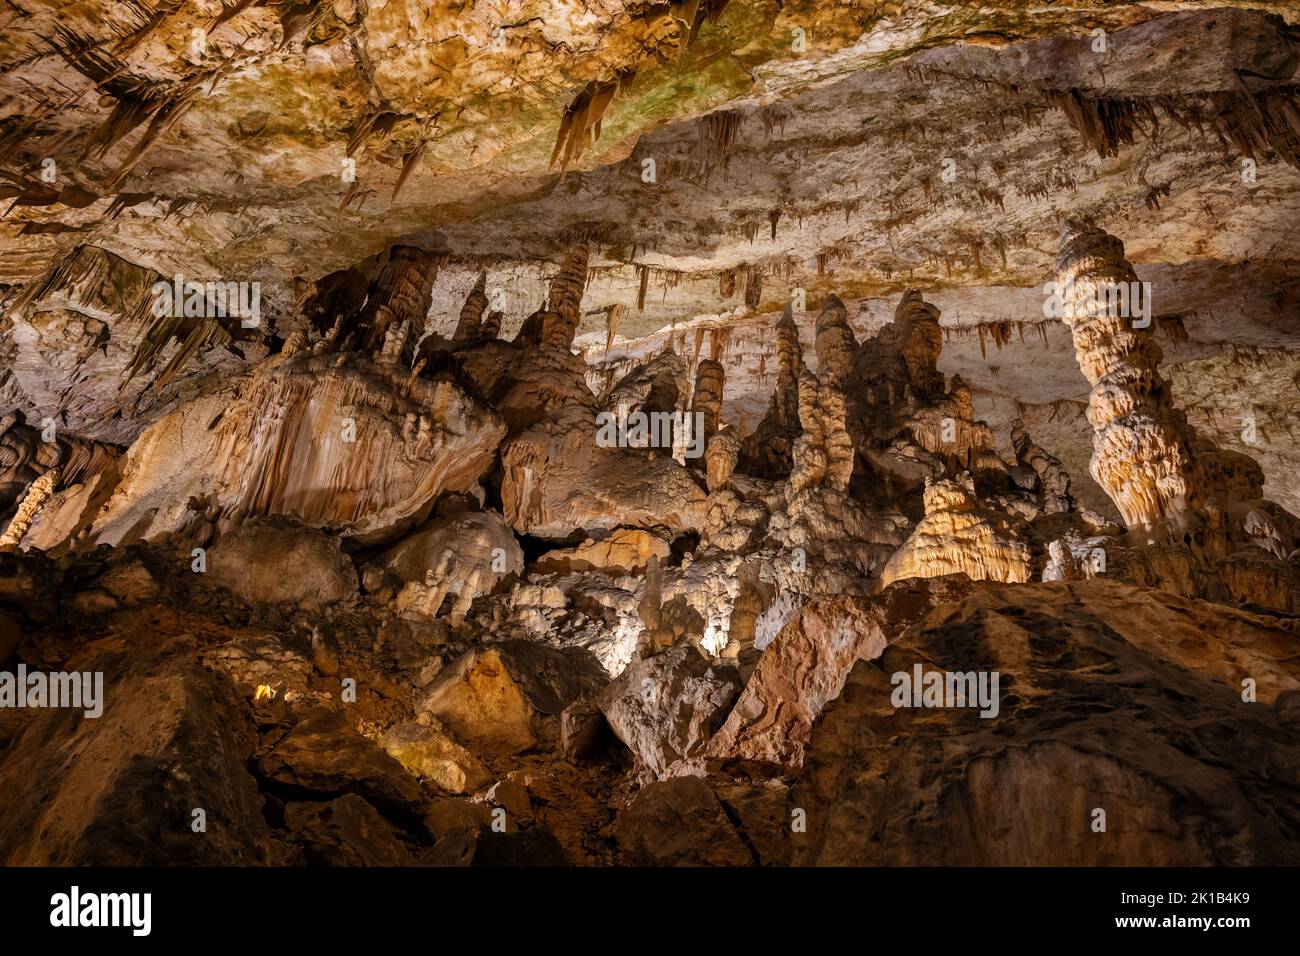 Postojna Cave (Postojnska jama) scenic interior in Slovenia, underground rock formations in karst cave system. Stock Photo